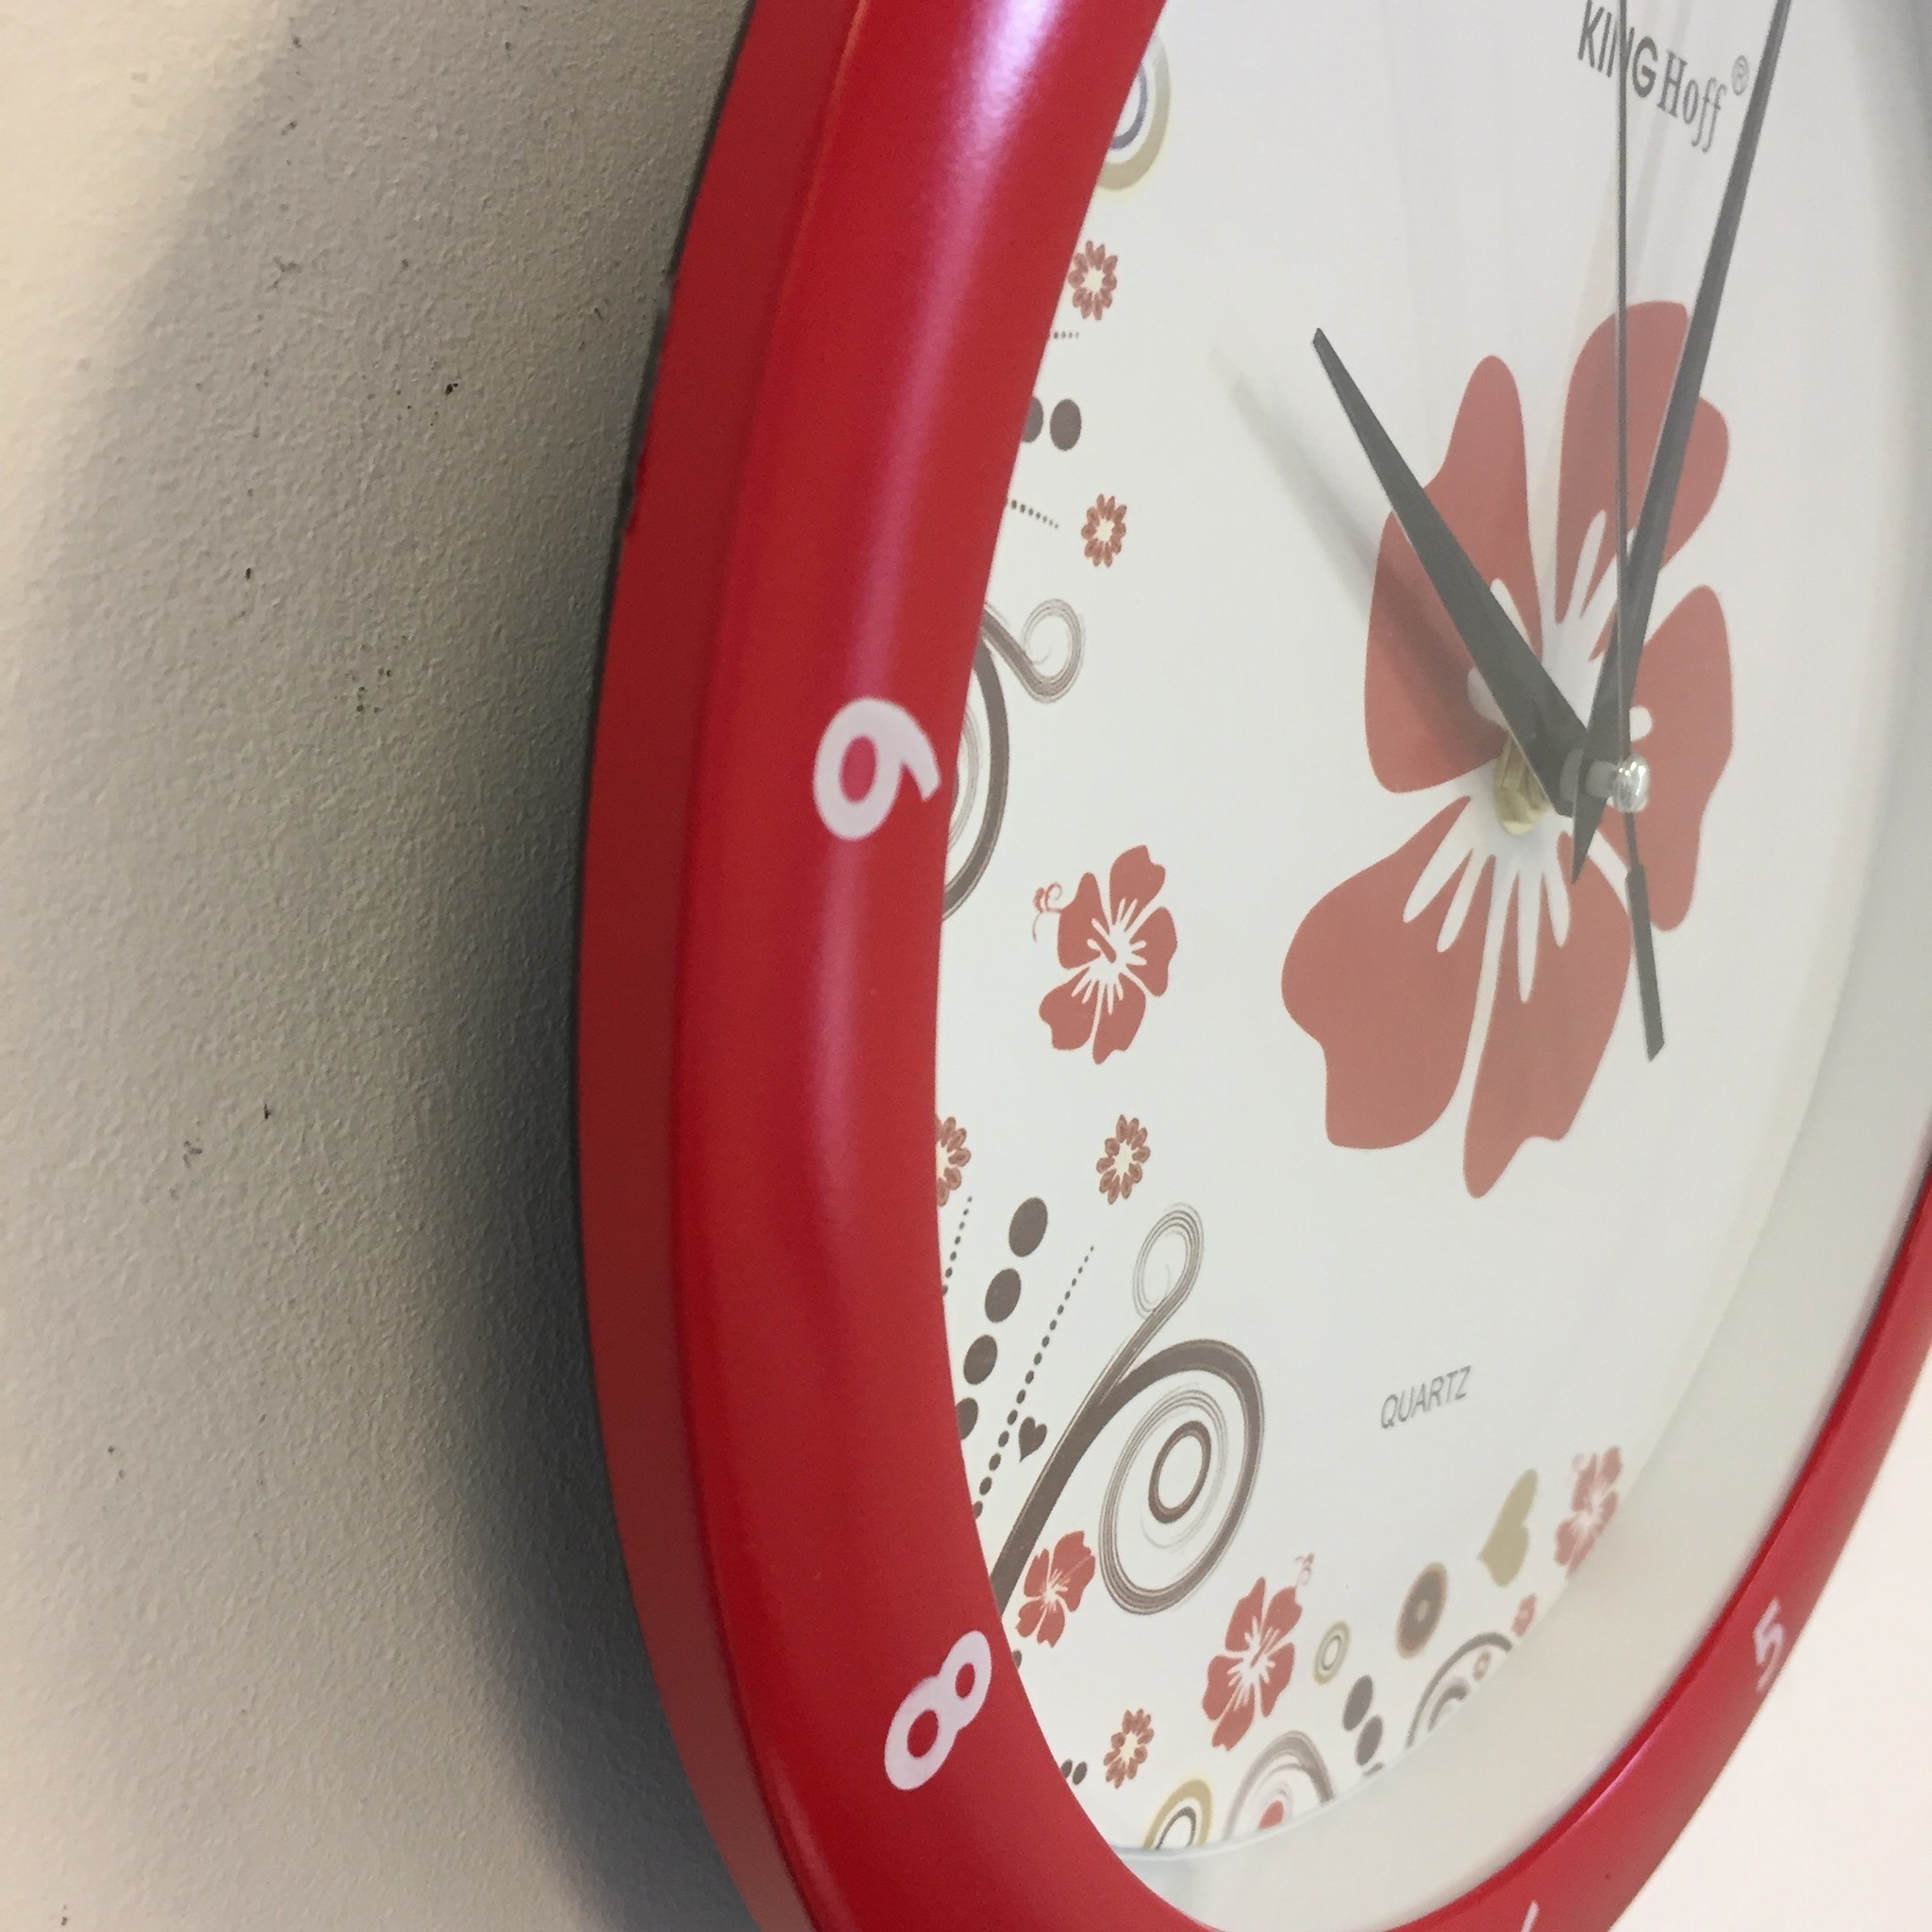 NiceTime Design - Wall clock Flower Power